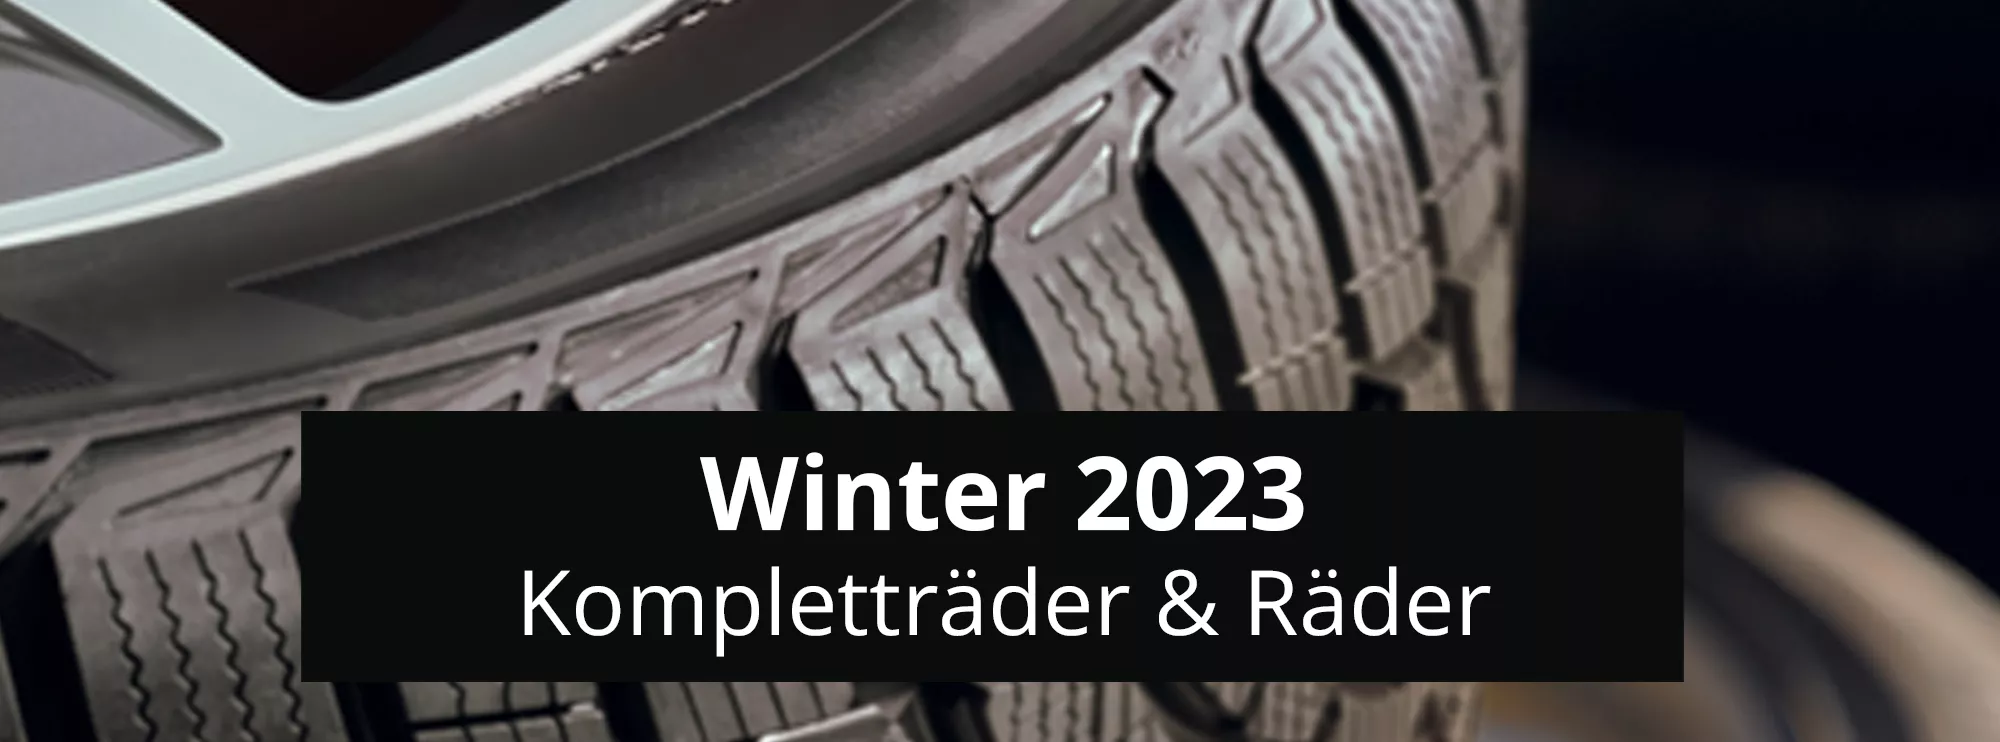 Winter 2023 header